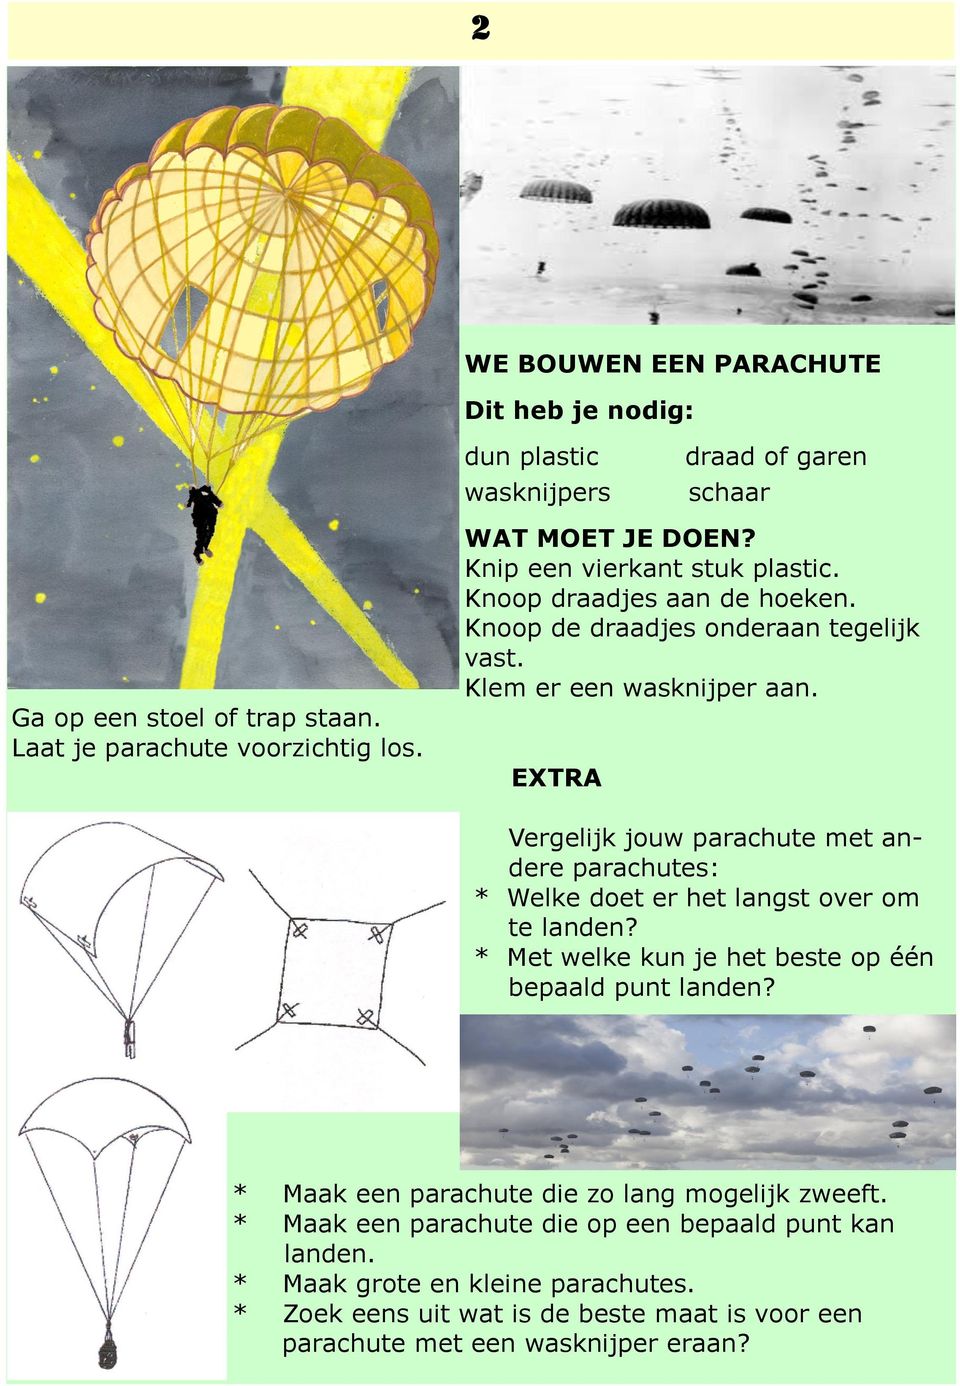 EXTRA Vergelijk jouw parachute met andere parachutes: * Welke doet er het langst over om te landen? * Met welke kun je het beste op één bepaald punt landen?